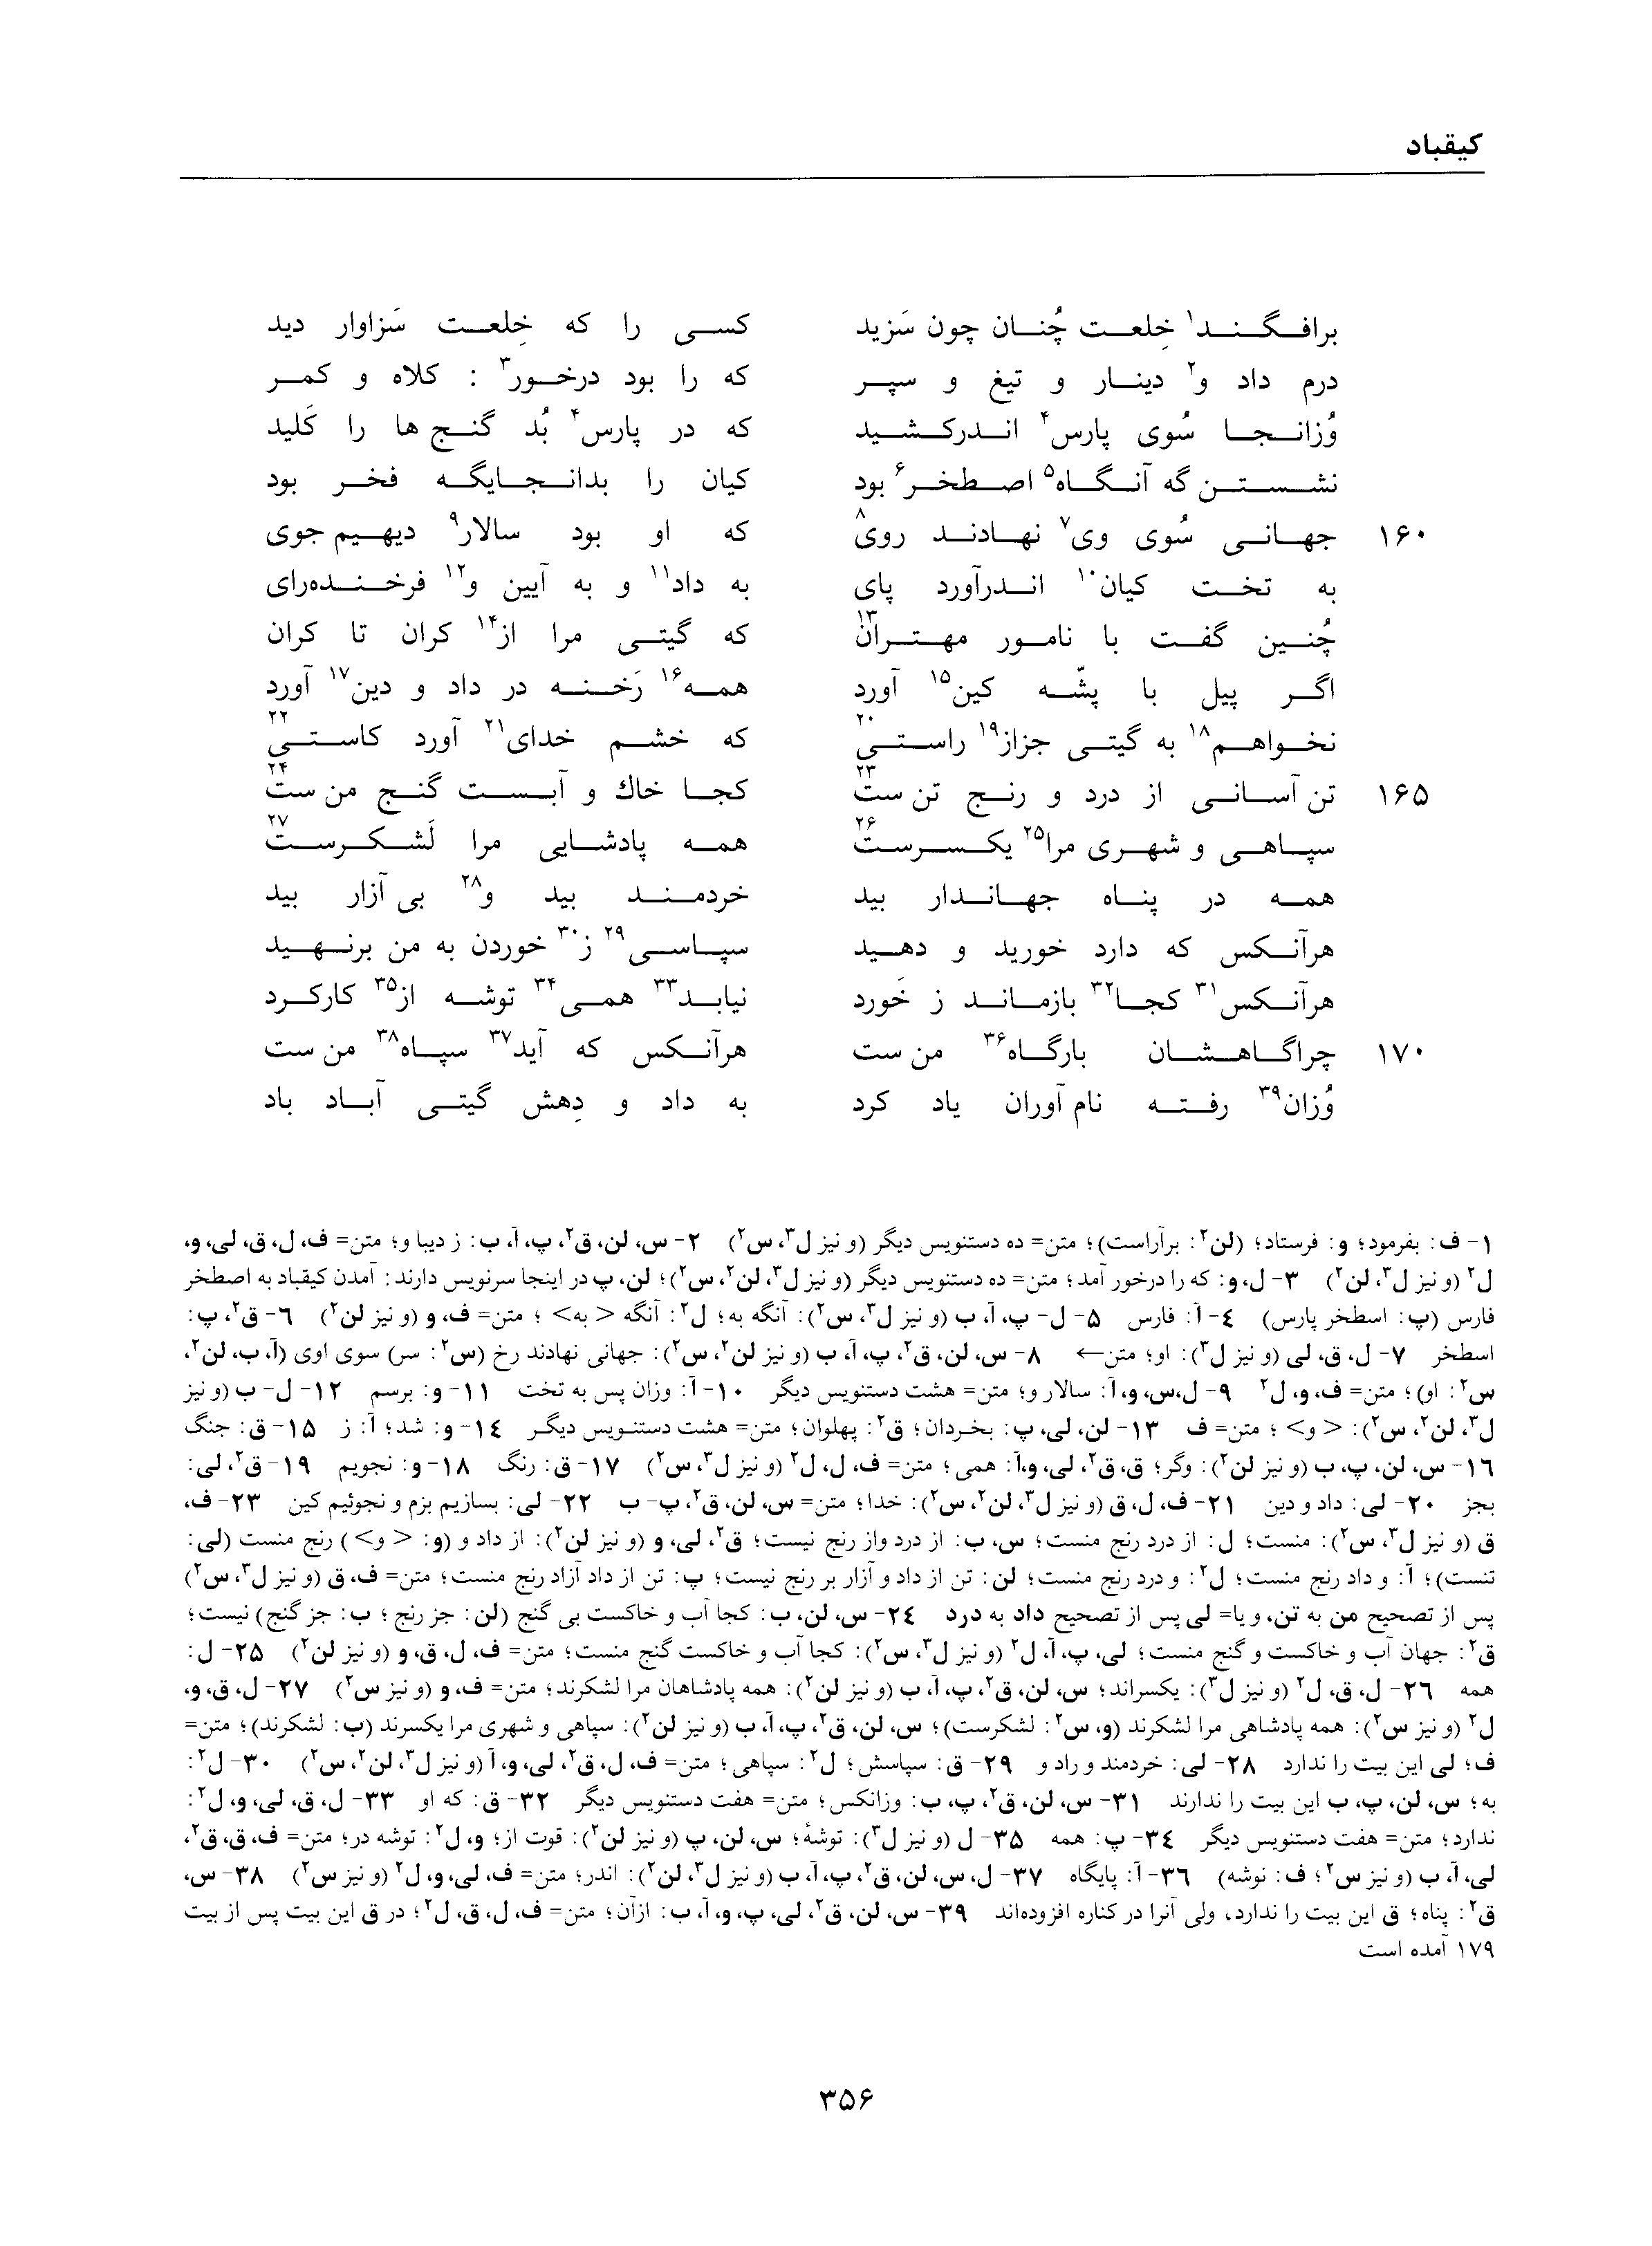 vol. 1, p. 356